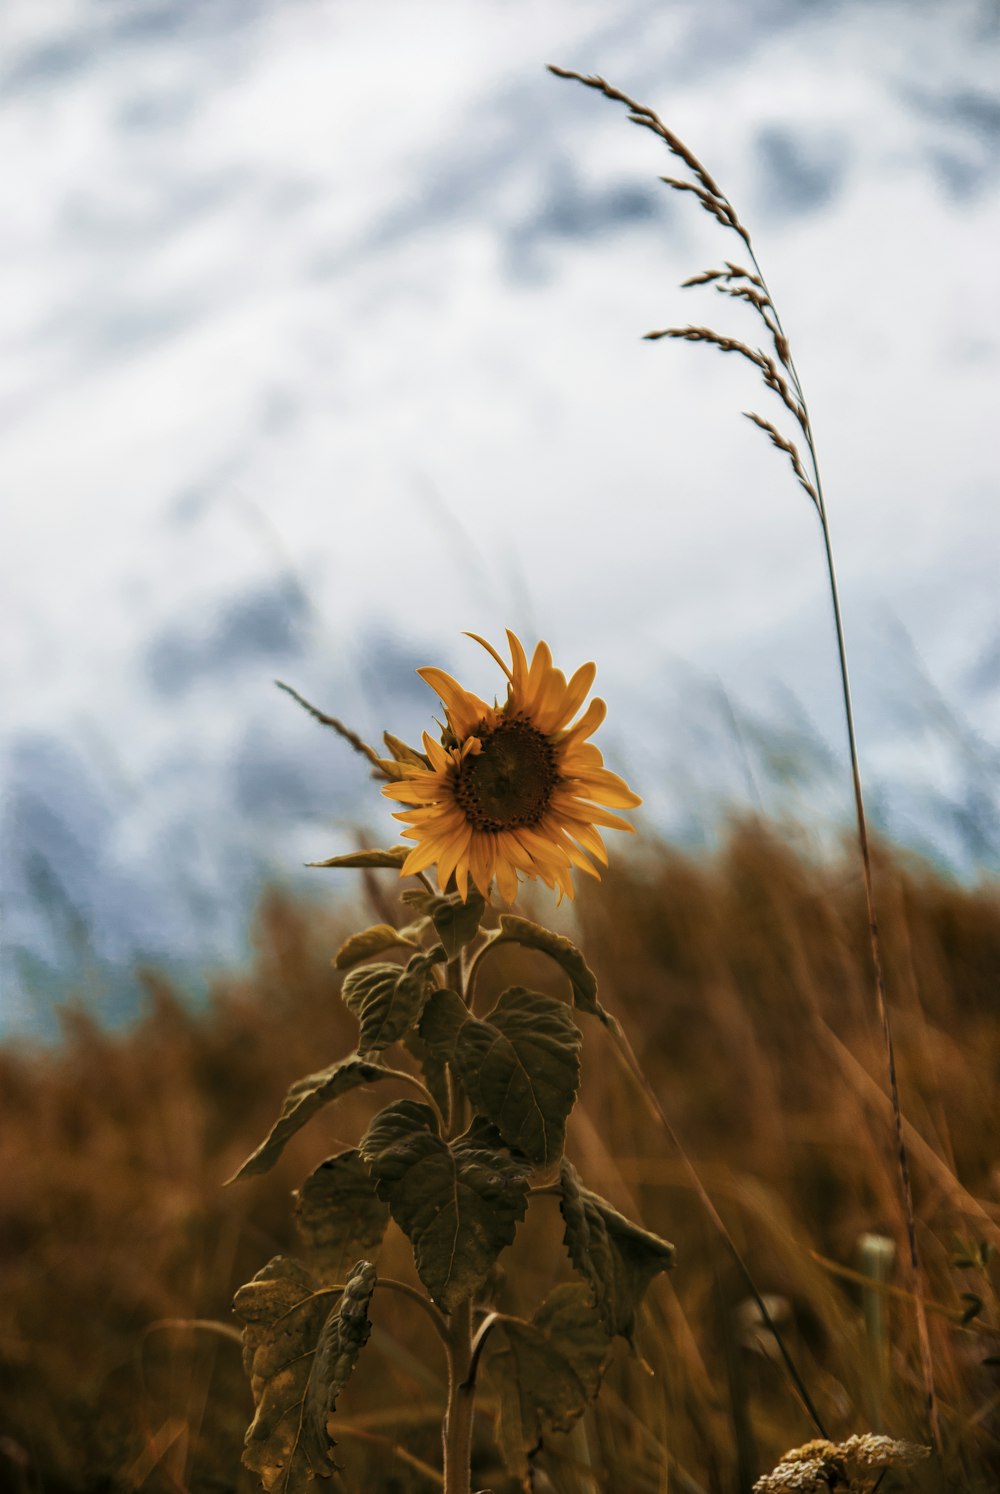 a sunflower growing in a field